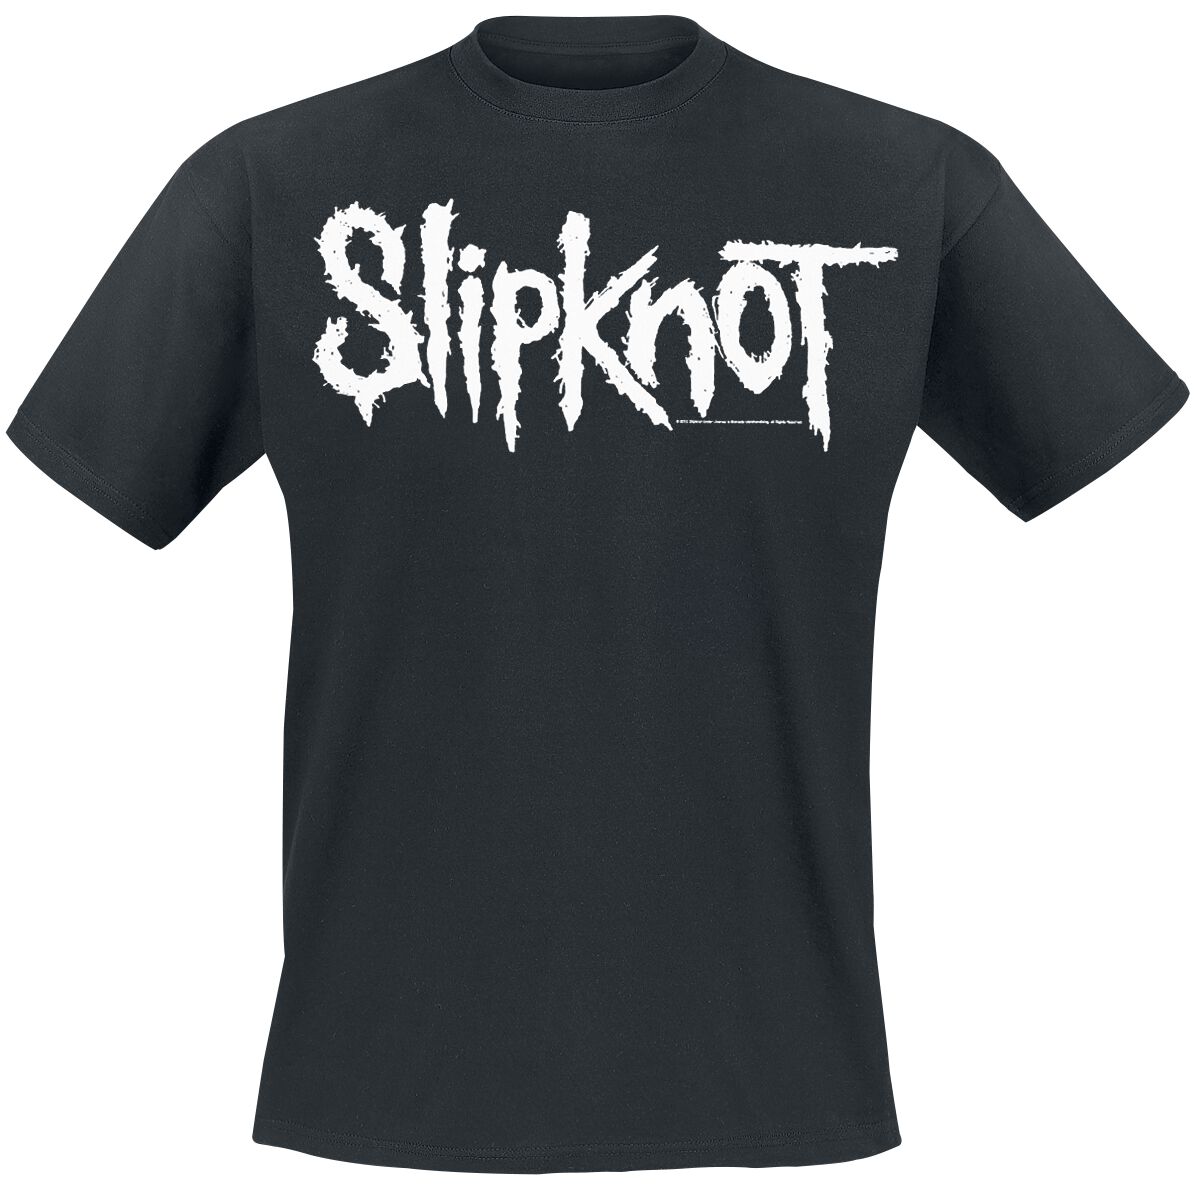 Slipknot T-Shirt - White Logo - S bis 5XL - für Männer - Größe L - schwarz  - EMP exklusives Merchandise!